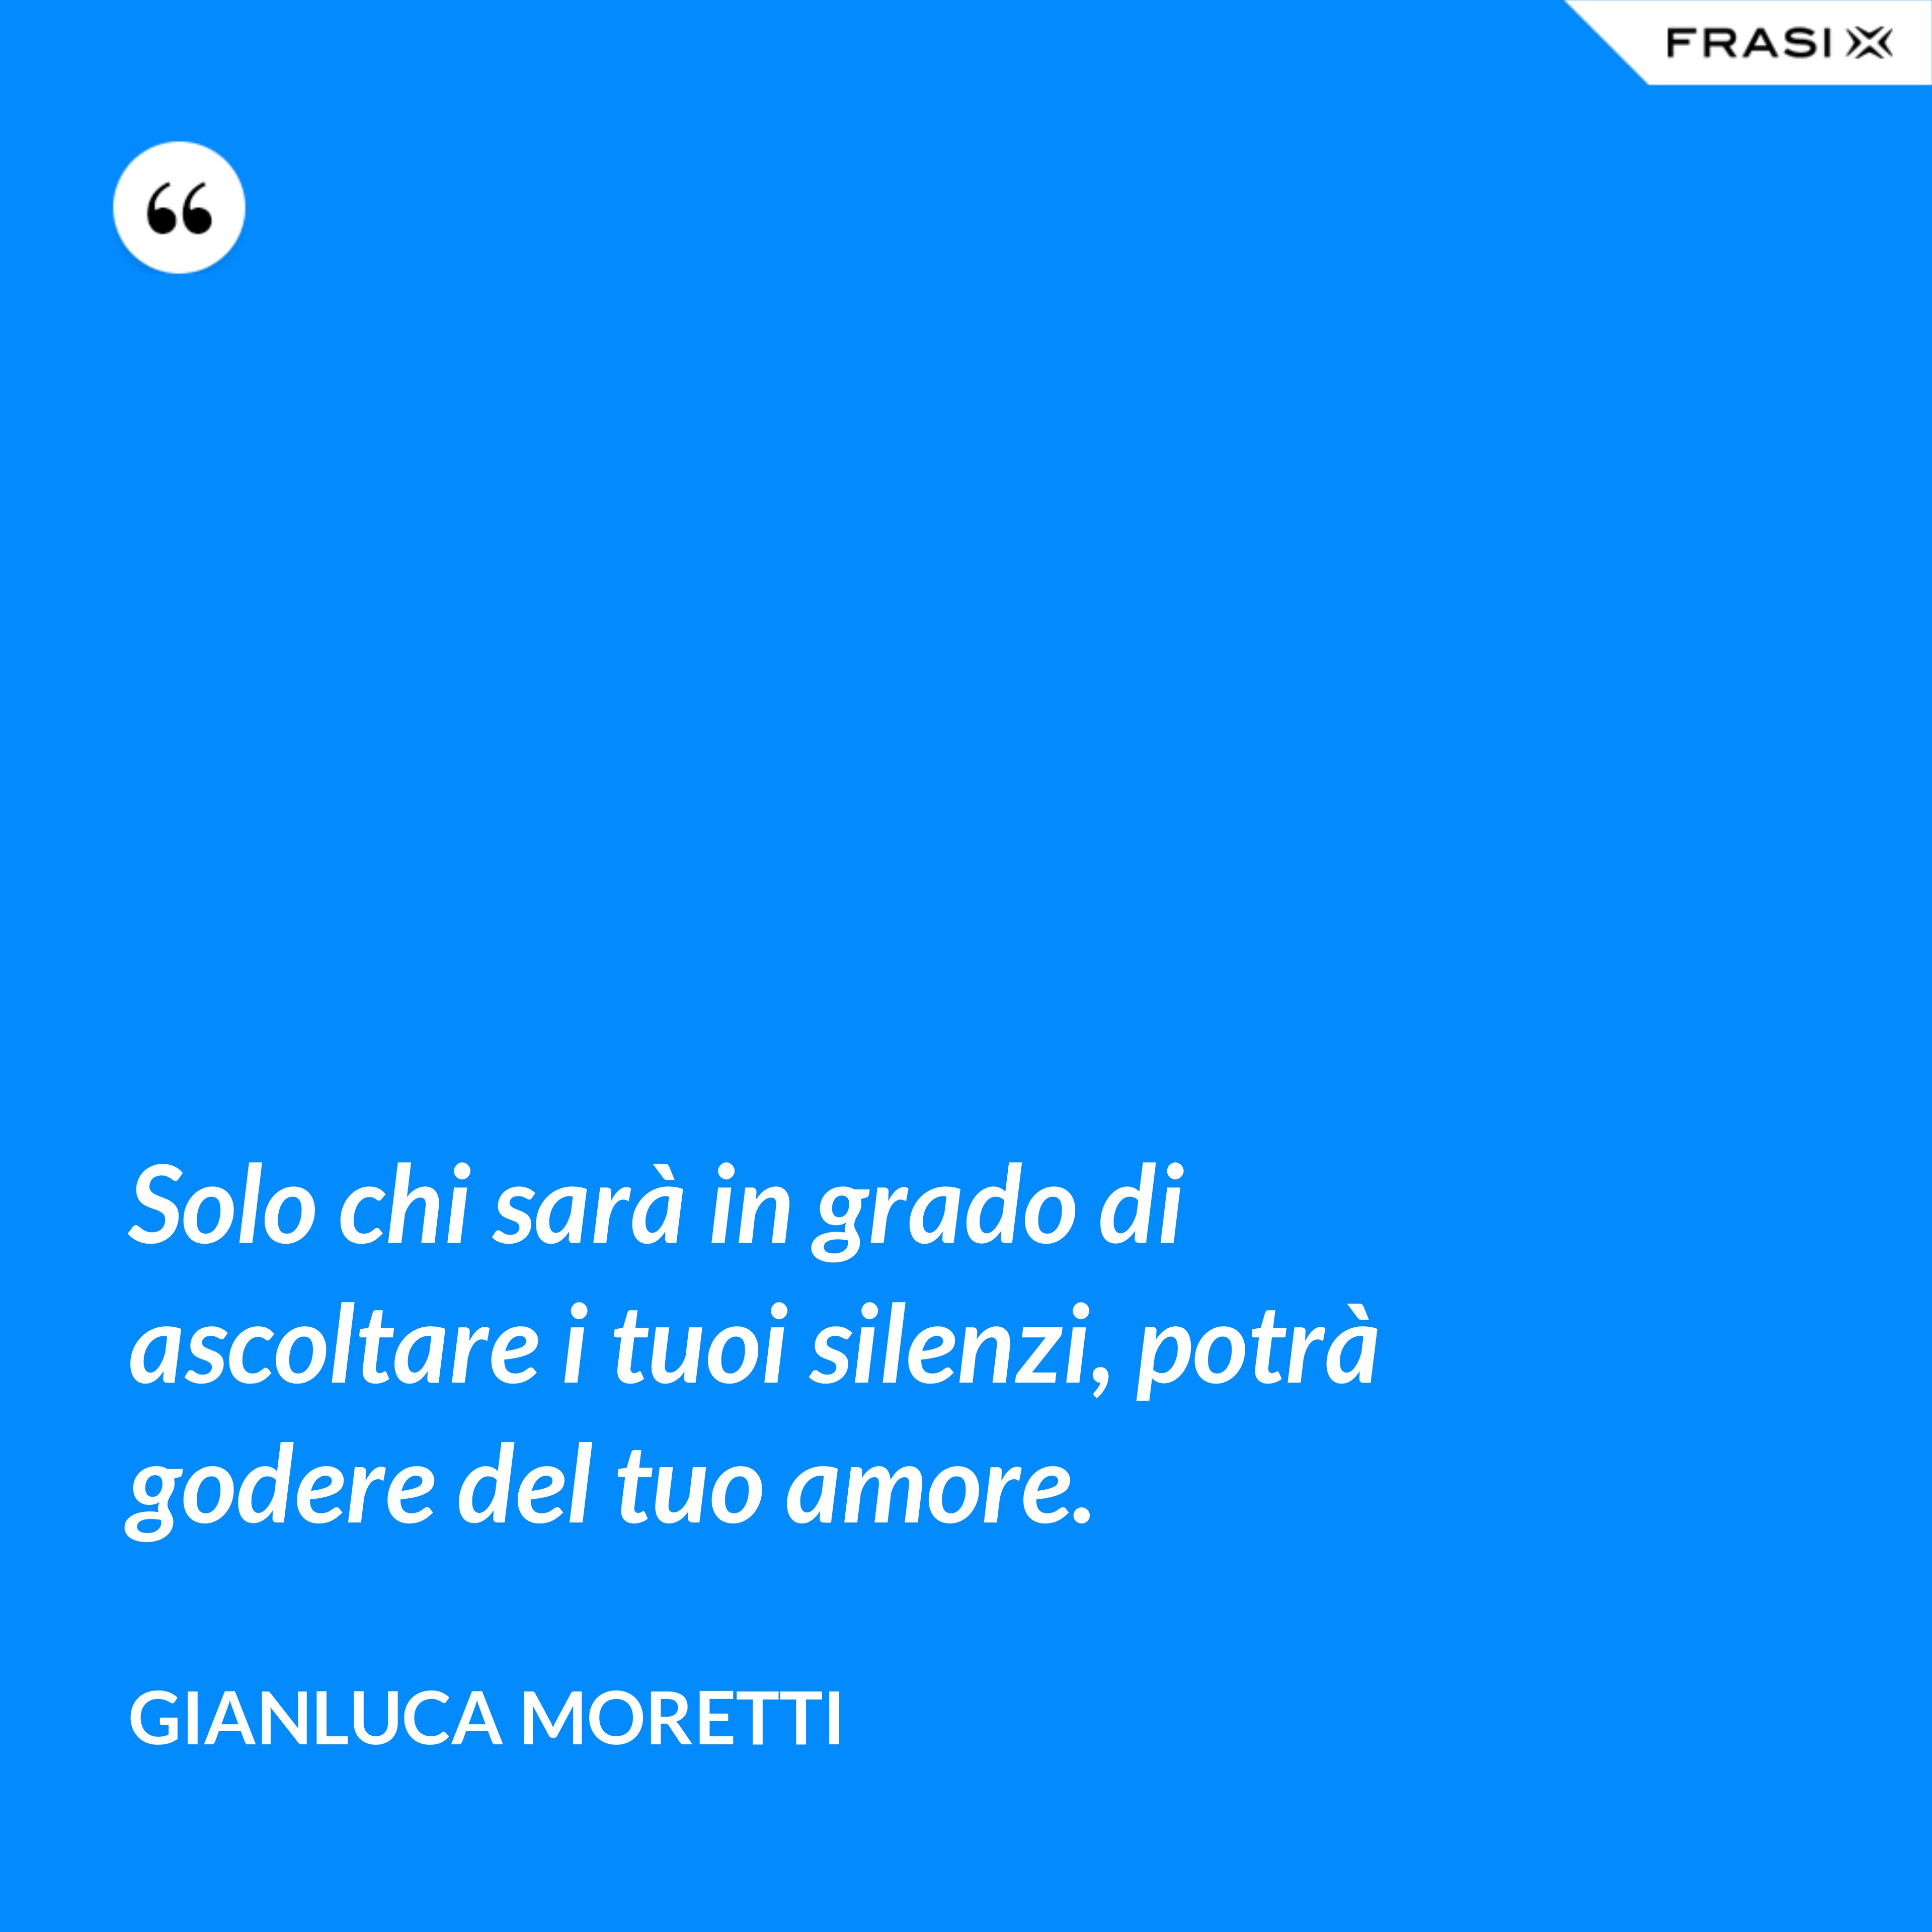 Solo chi sarà in grado di ascoltare i tuoi silenzi, potrà godere del tuo amore. - Gianluca Moretti